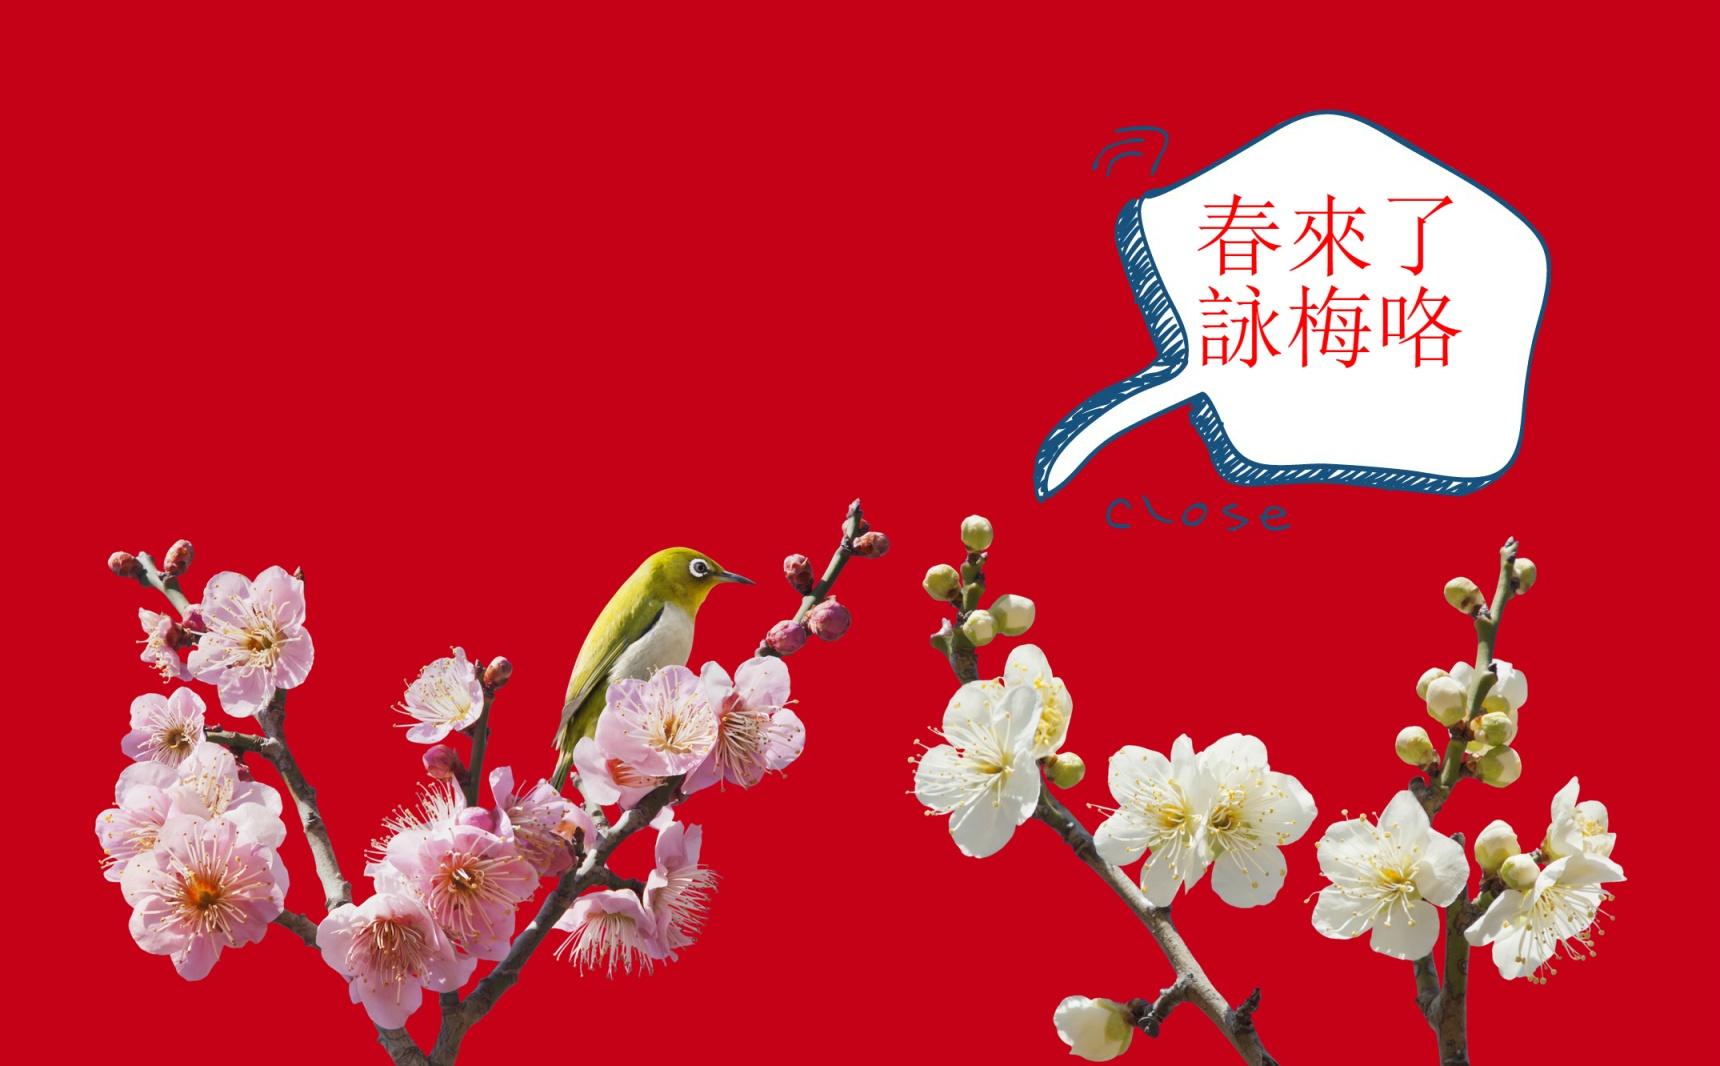 赏花季已到 — 神奈川县那三万五千颗新梅带你领略何为春暖花开